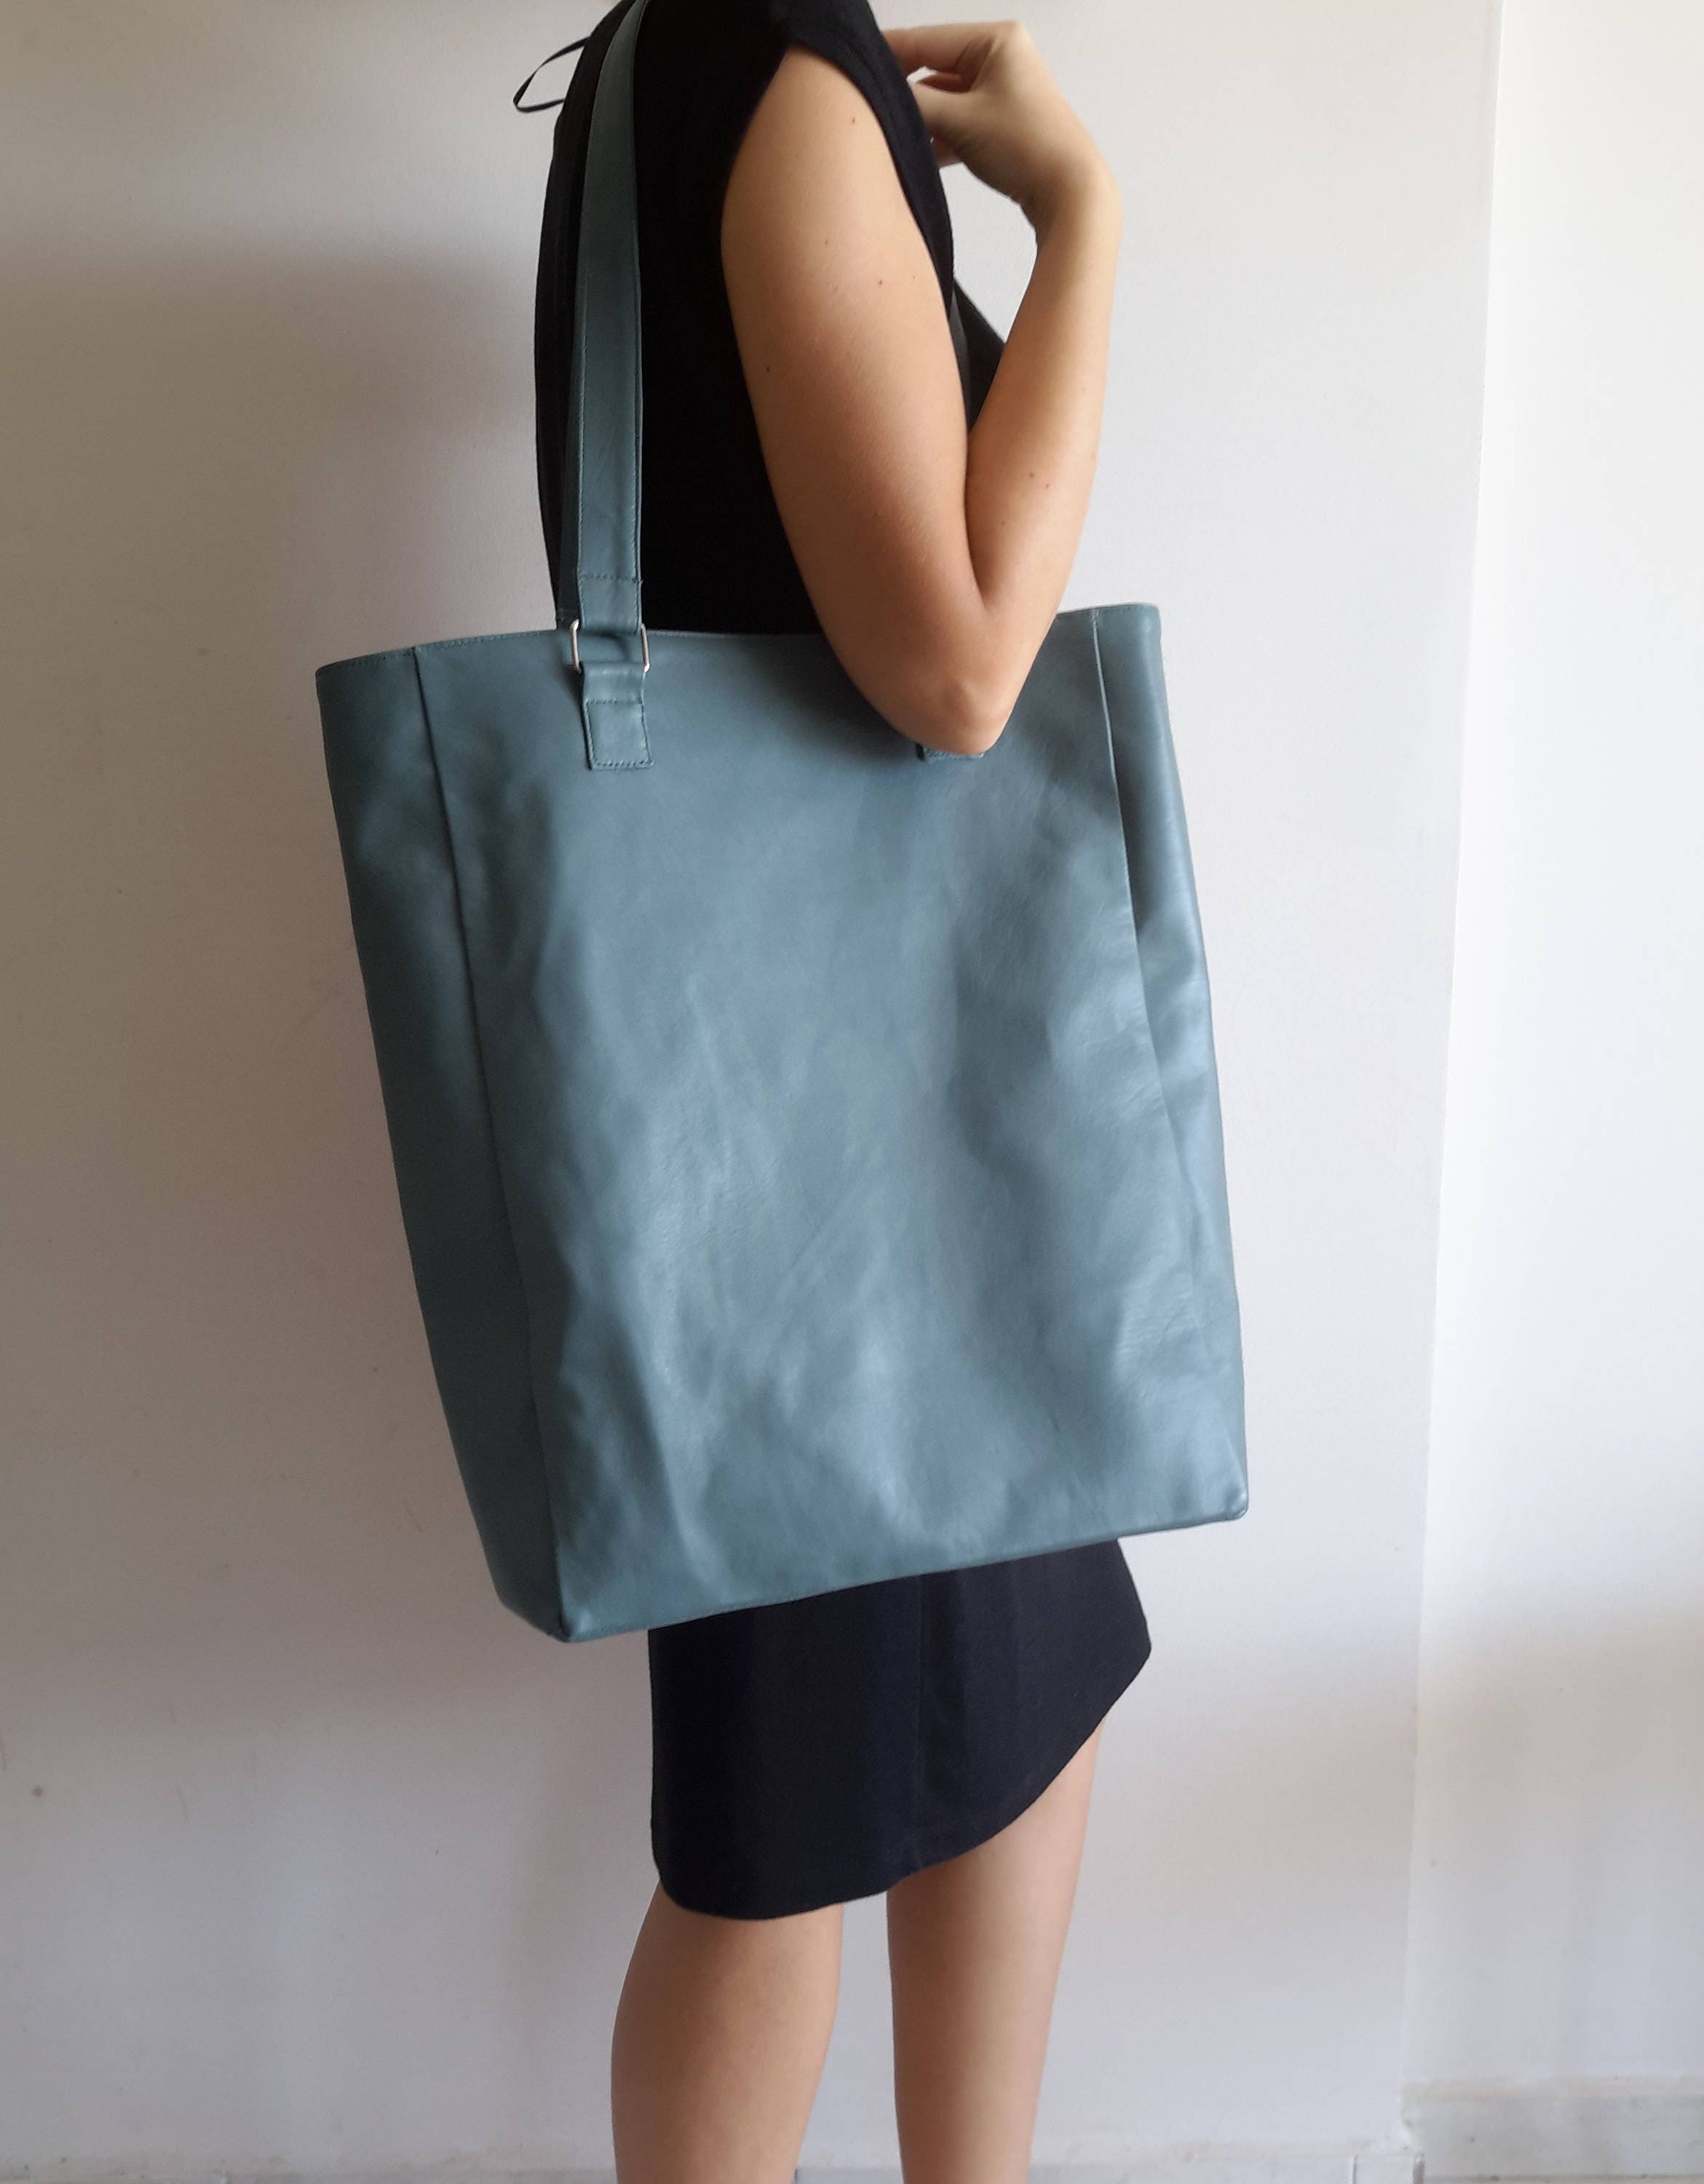 Oversized tote bag Bag for Women Weekend bag Travel bag | Etsy